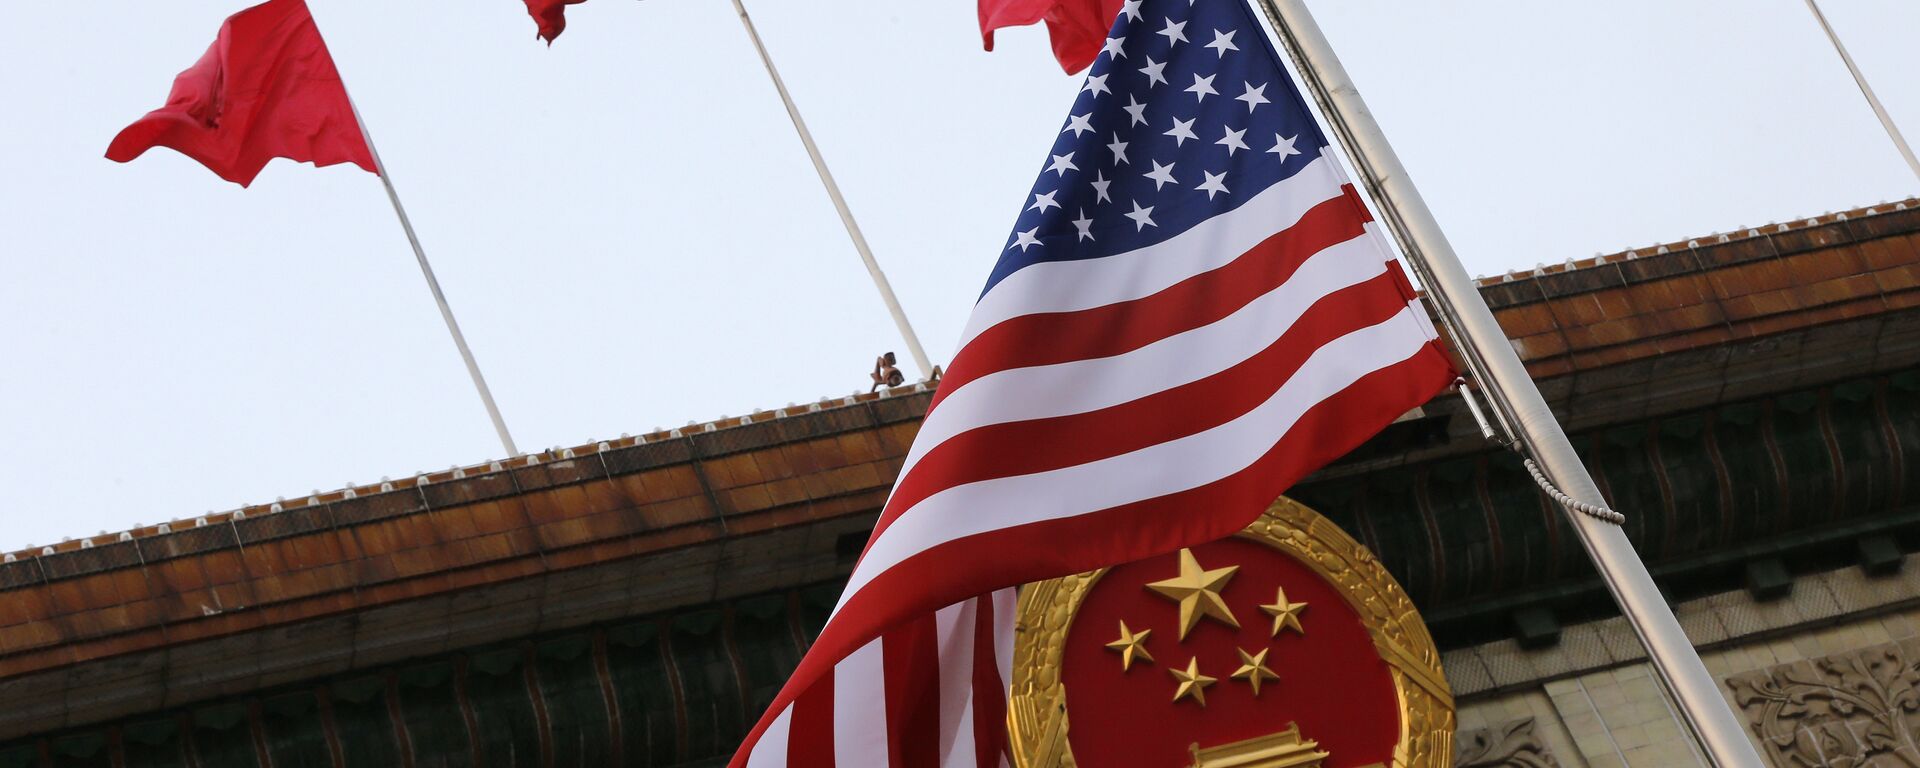 Флаги США и Китая во время визита Дональда Трампа в Пекин 9 ноября 2017 года - Sputnik Тоҷикистон, 1920, 19.05.2022